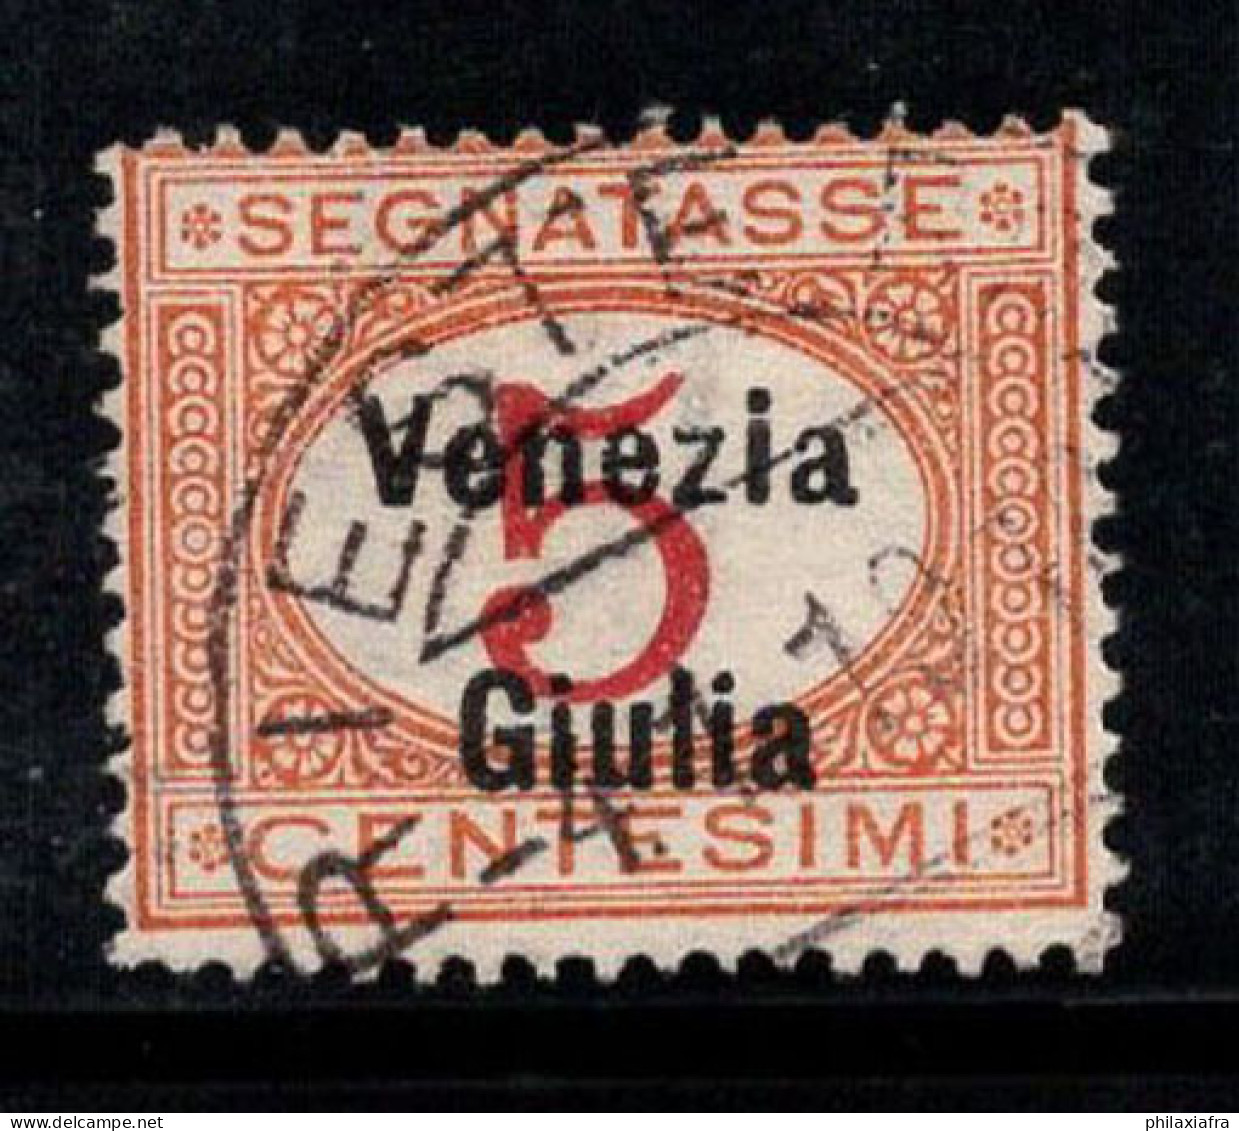 Venise Giulia 1918 Sass. 1 Oblitéré 100% Timbre-taxe 5 Cents - Vénétie Julienne